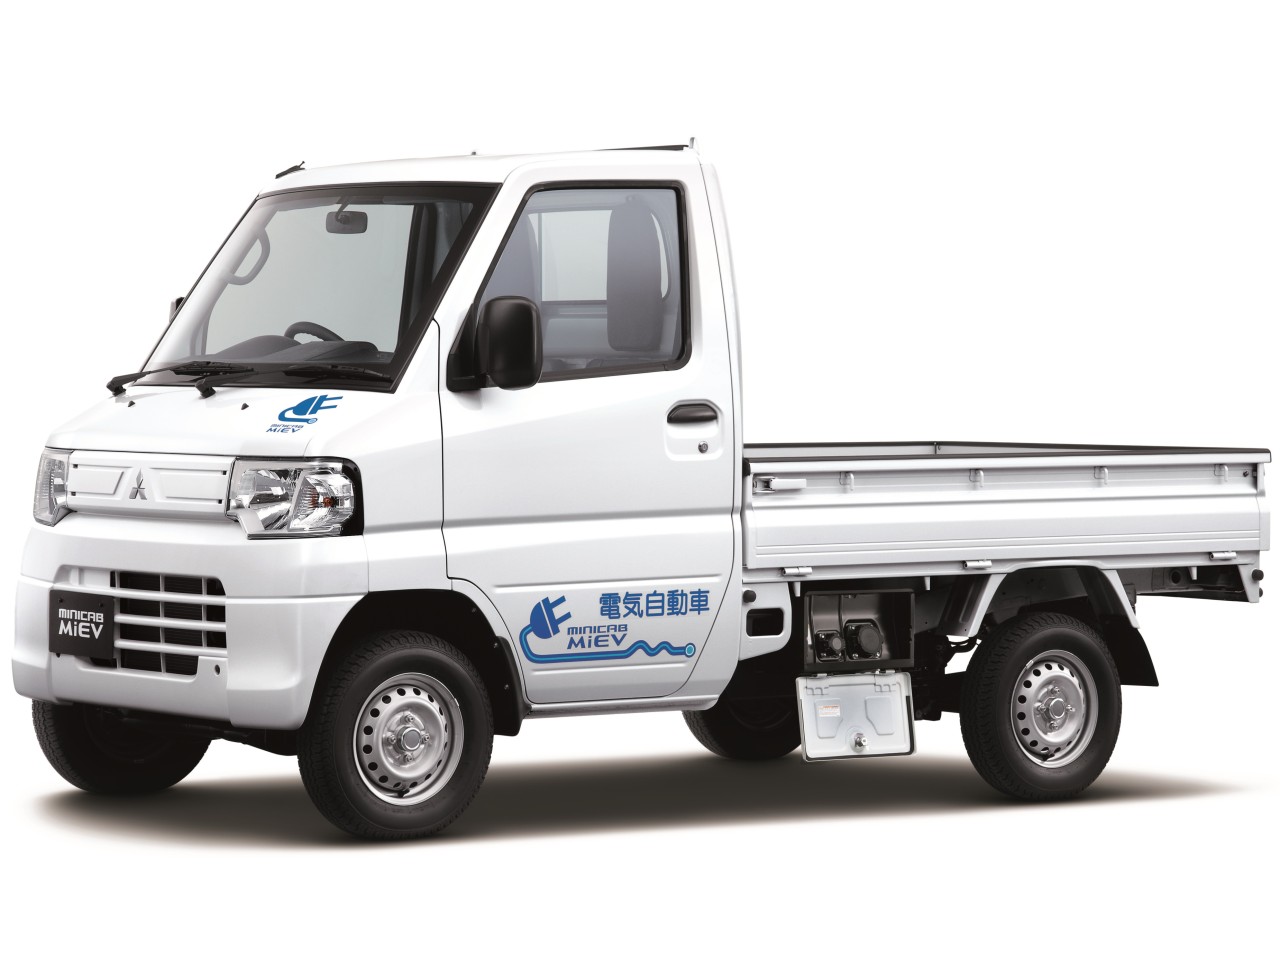 三菱 ミニキャブ Miev トラック 価格 新型情報 グレード諸元 価格 Com